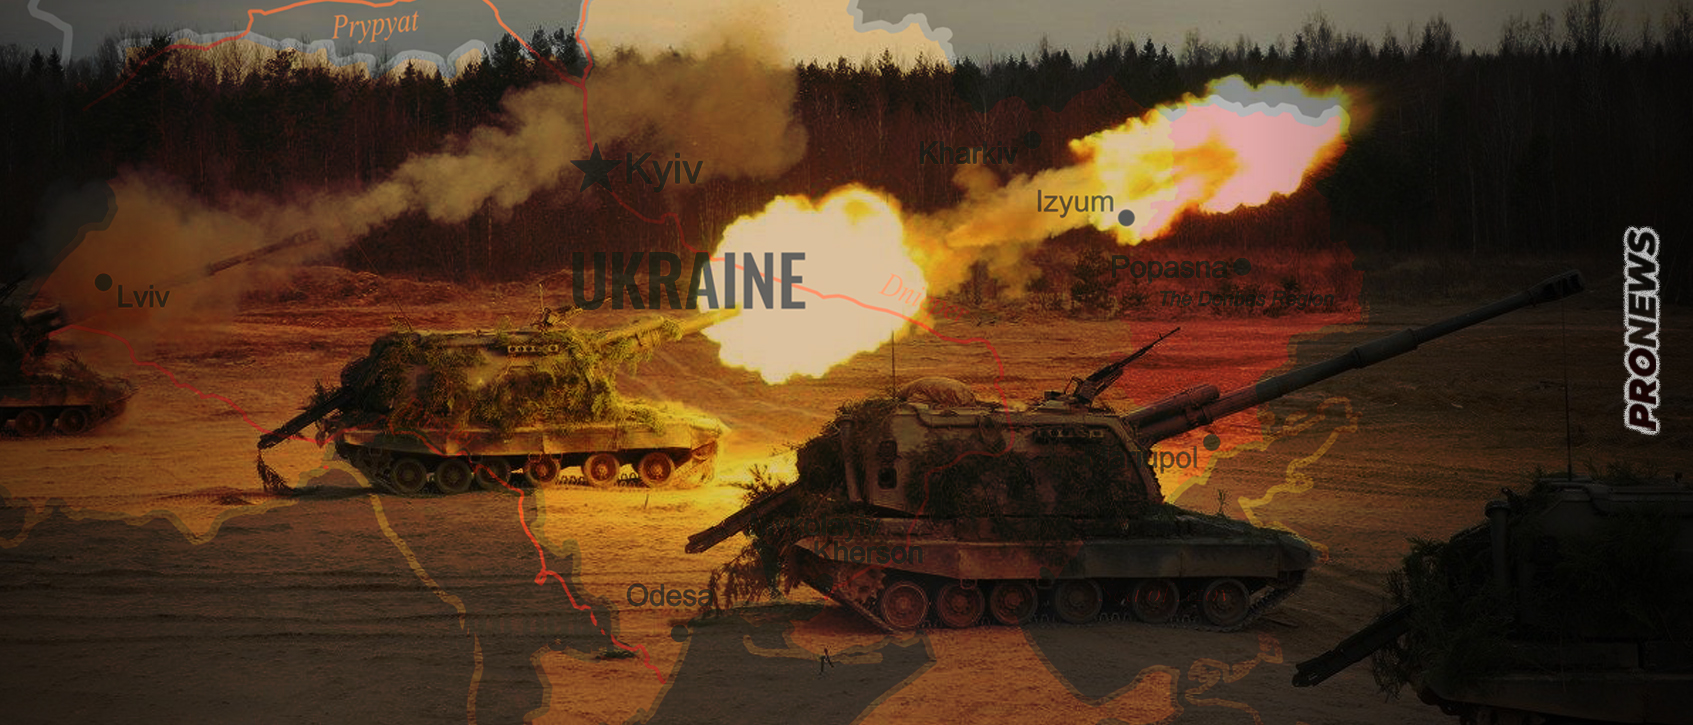 Βίντεο: Σκληρές μάχες στο νότιο τομέα της Αβντίιβκα – Ρωσικά άρματα μάχης ανοίγουν τον δρόμο για το Πεζικό!